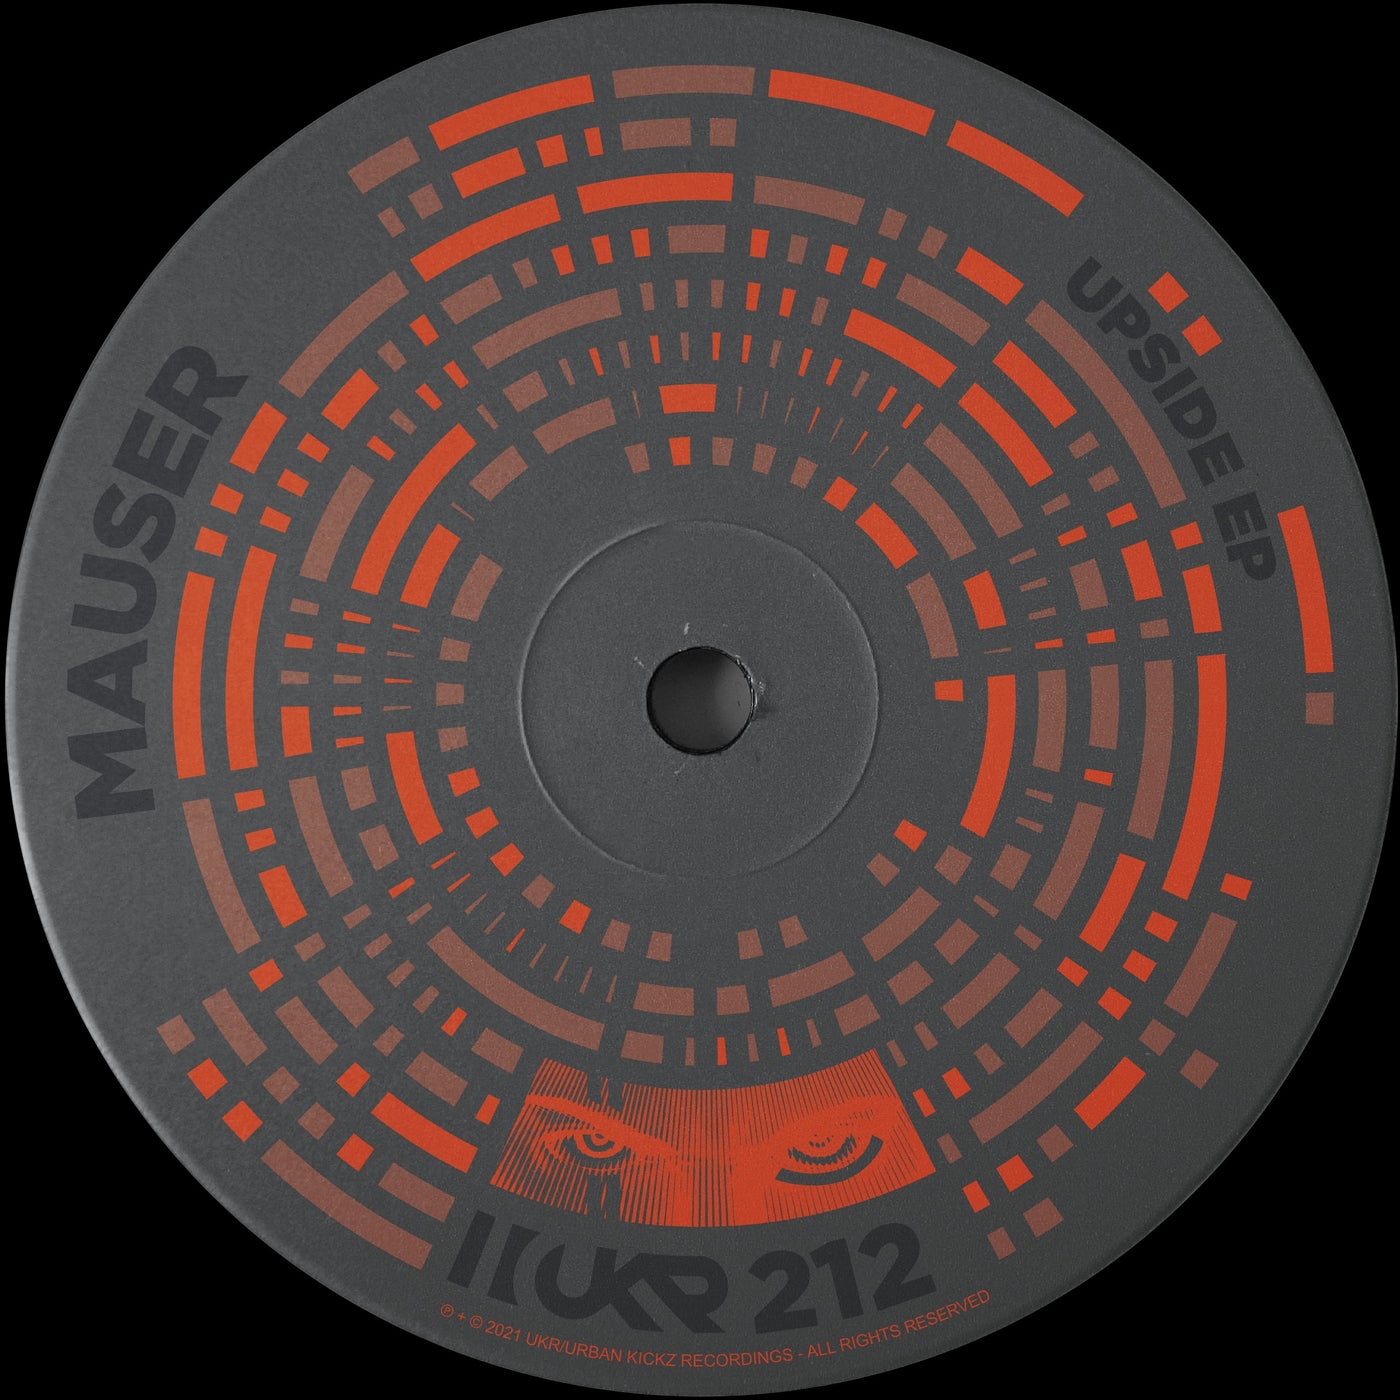 Mauser – Upside EP [UKR212]